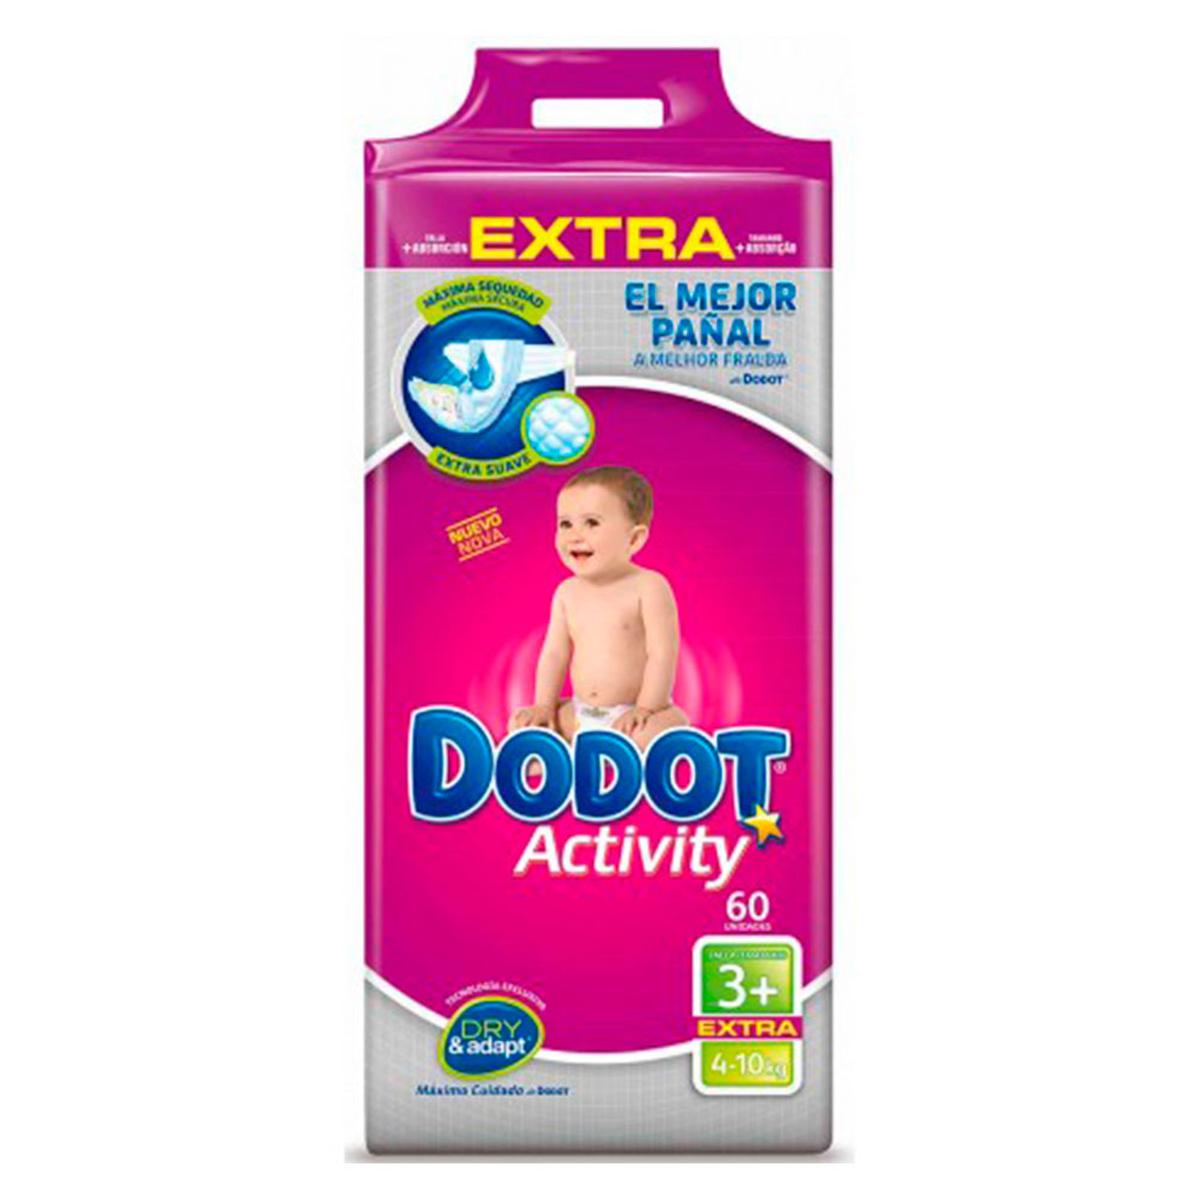 Dodot - Pañales Activity Extra T3 (7-11kg) 60 Unidades, Pañal Activity